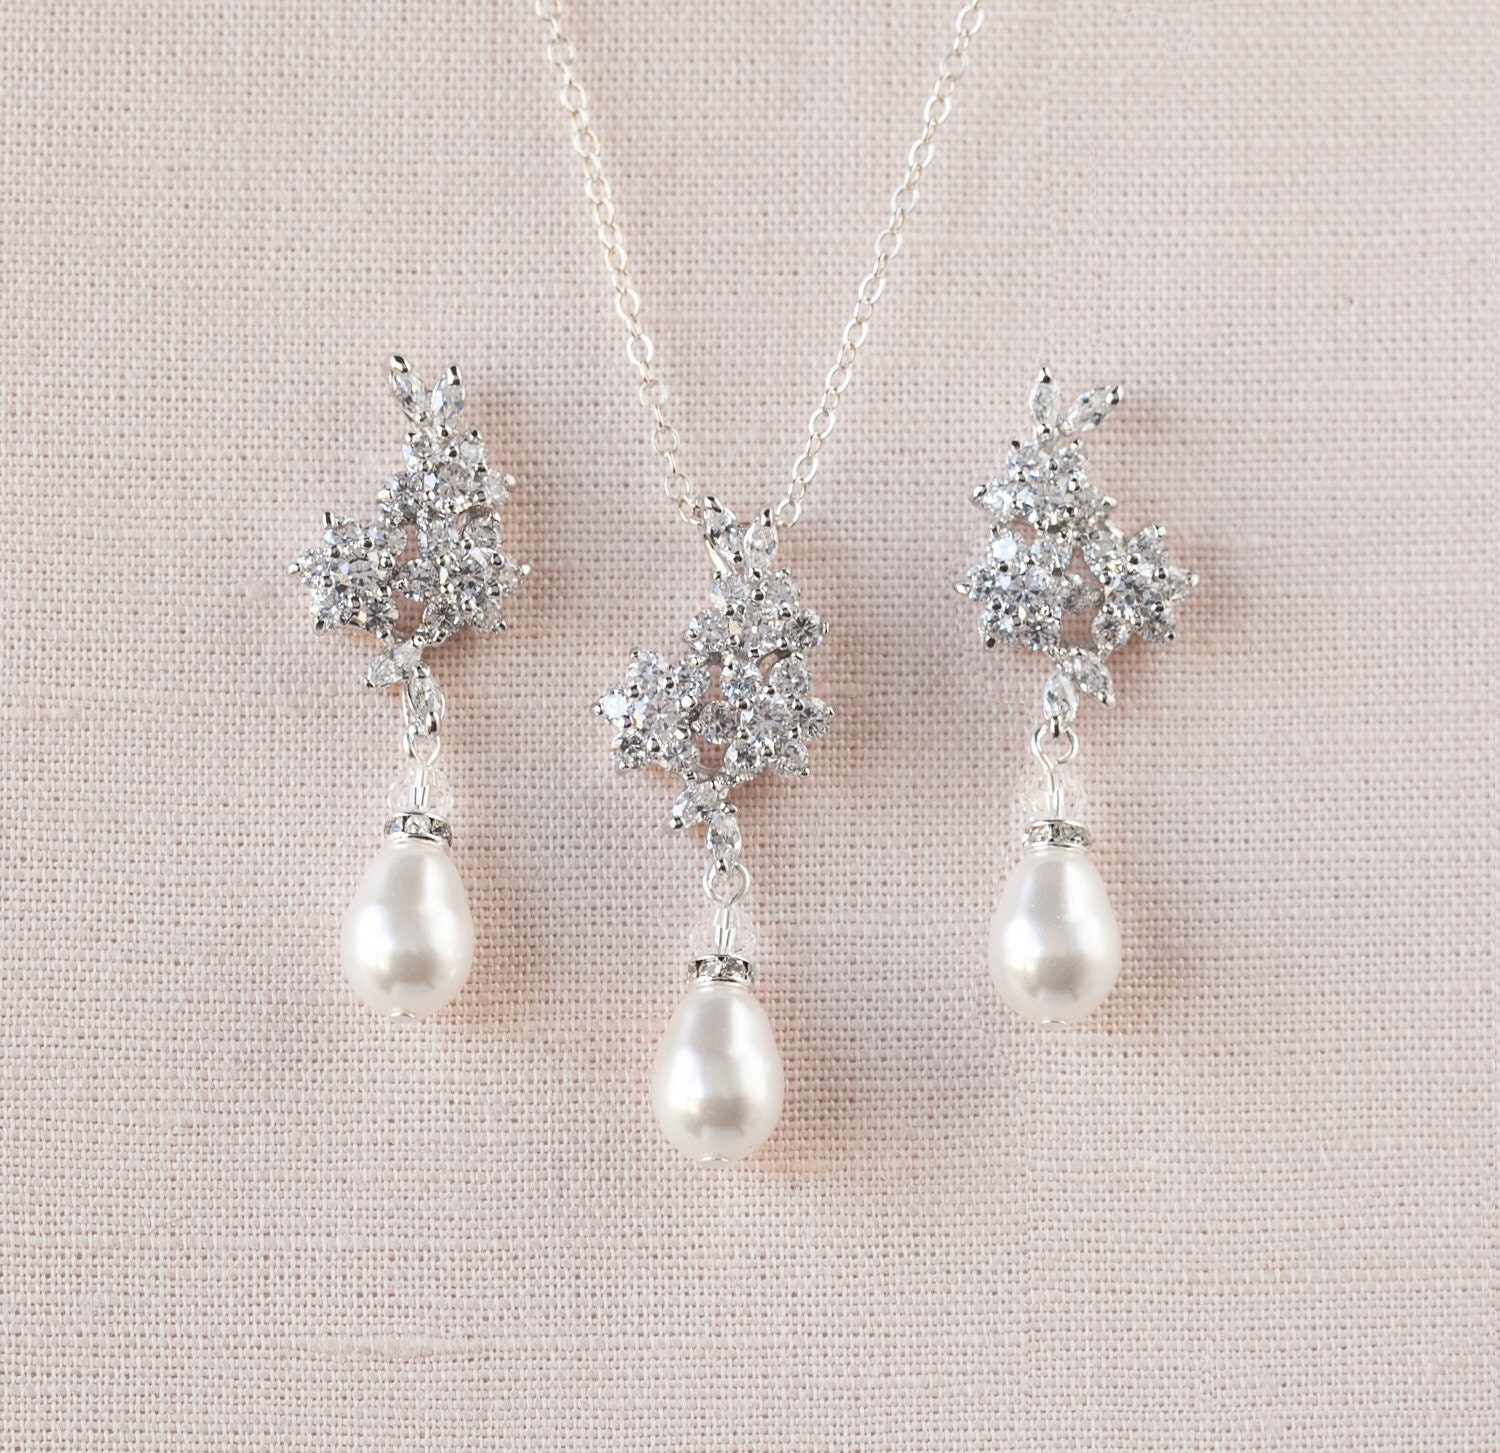 Crystal Pearl Bridal Earrings Stud wedding earrings Rose